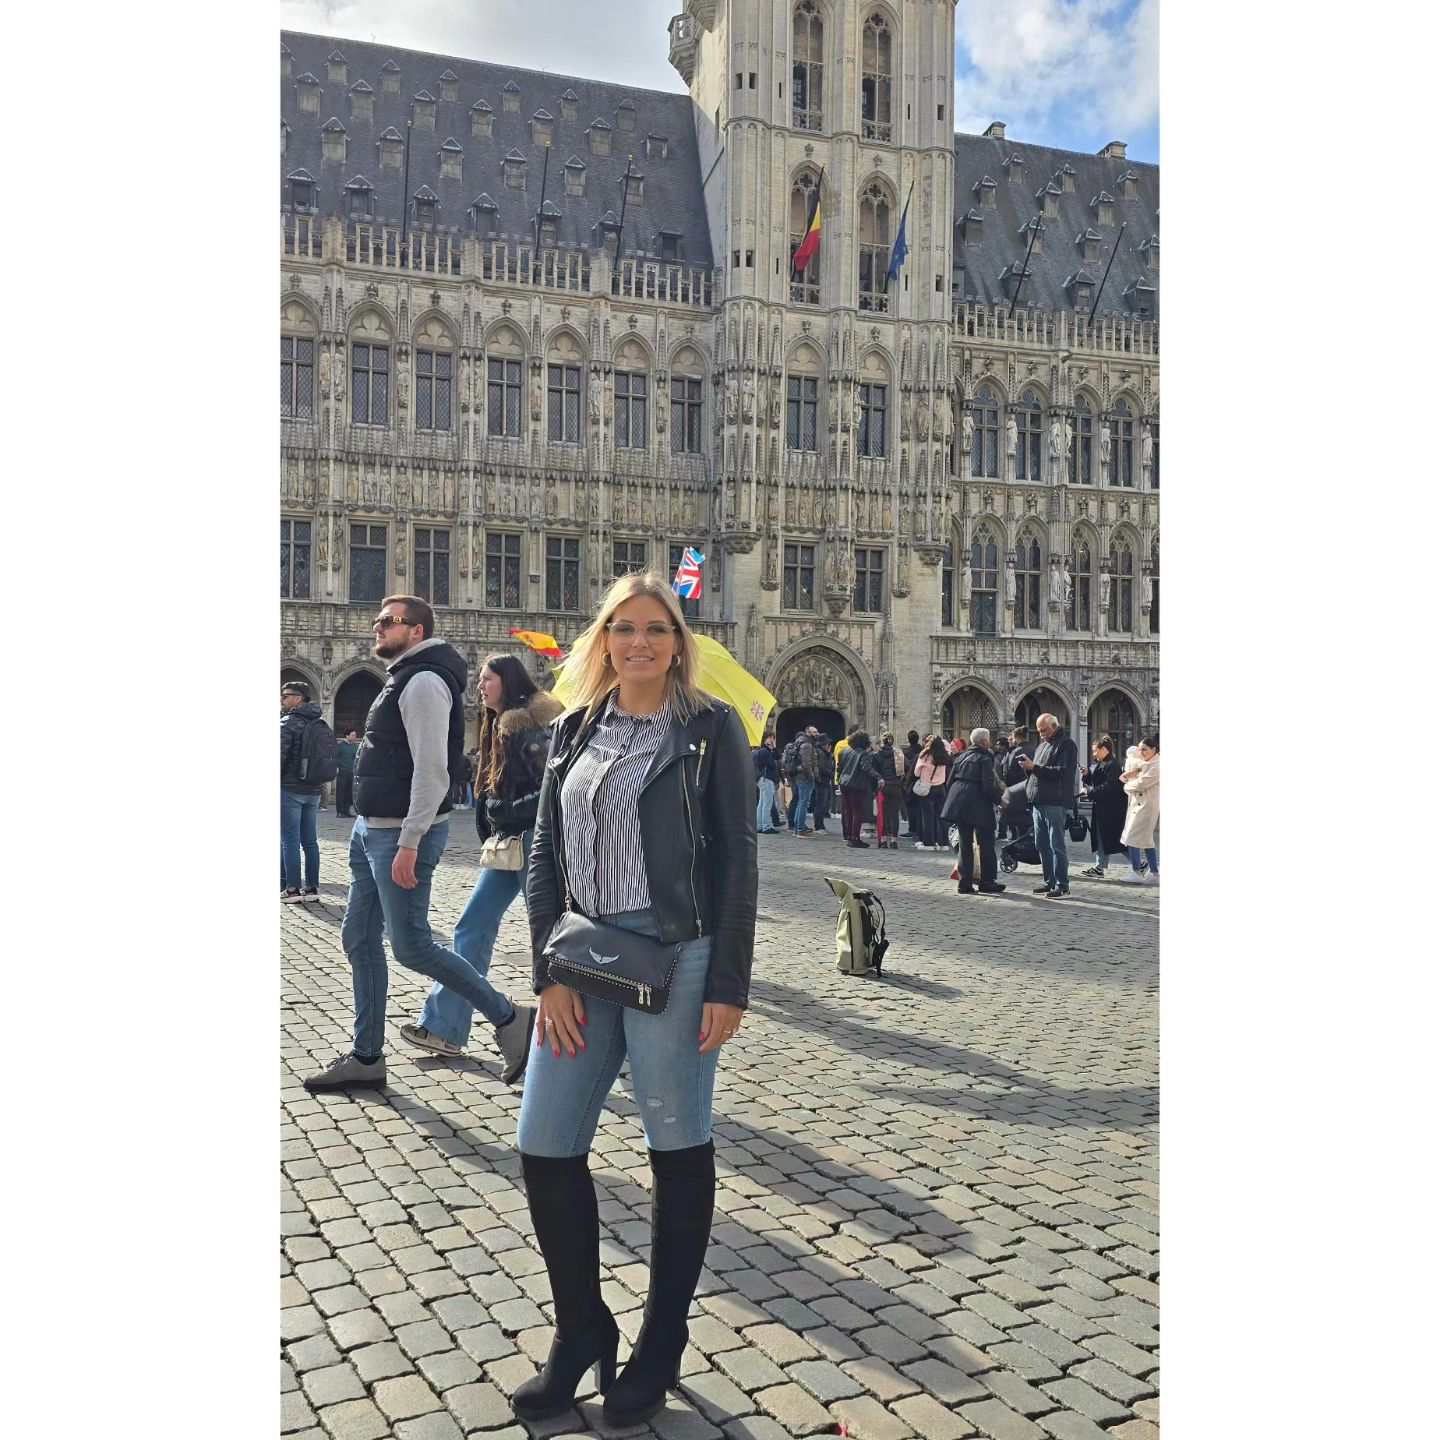 Juste comme ça, pour le bonheur. Vous avez déjà visité #Bruxelles ? Si oui un souvenir à nous partager ? 😜 Bruxelles ma belle 🇧🇪! 
#Voyage #Tourisme #Europe #belgique🇧🇪 #bruxelles #charleroi #modelephoto #grandplace #grandplacebrussels #monde #botte #shoes #bien #bonheur #soelil #beautemps #balade #🇧🇪